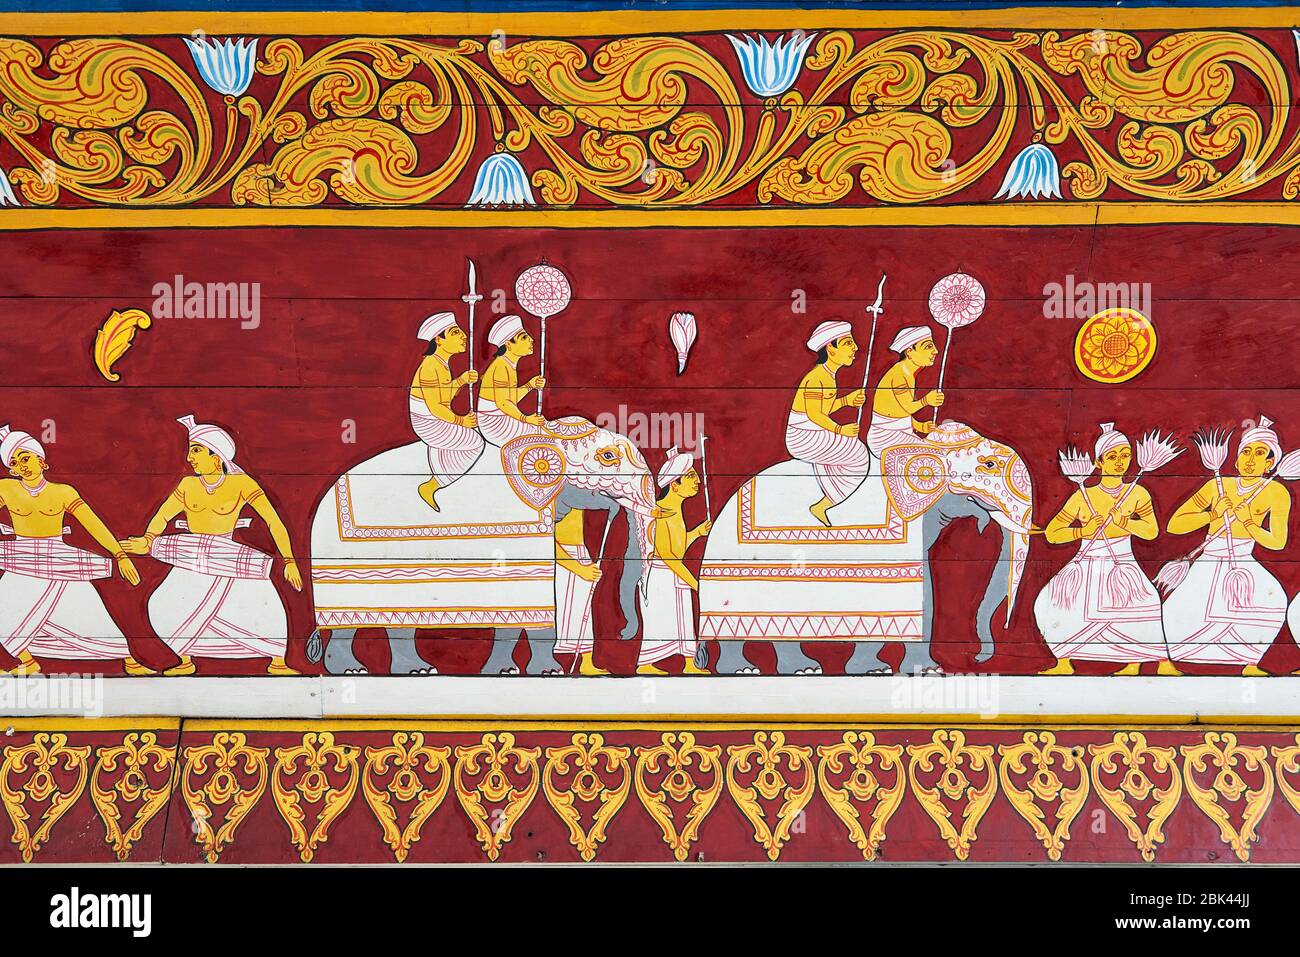 Peintures colorées sur le mur au temple relique de la dent sacrée à Kandy, au Sri Lanka, représentant des danseurs et des éléphants. Banque D'Images